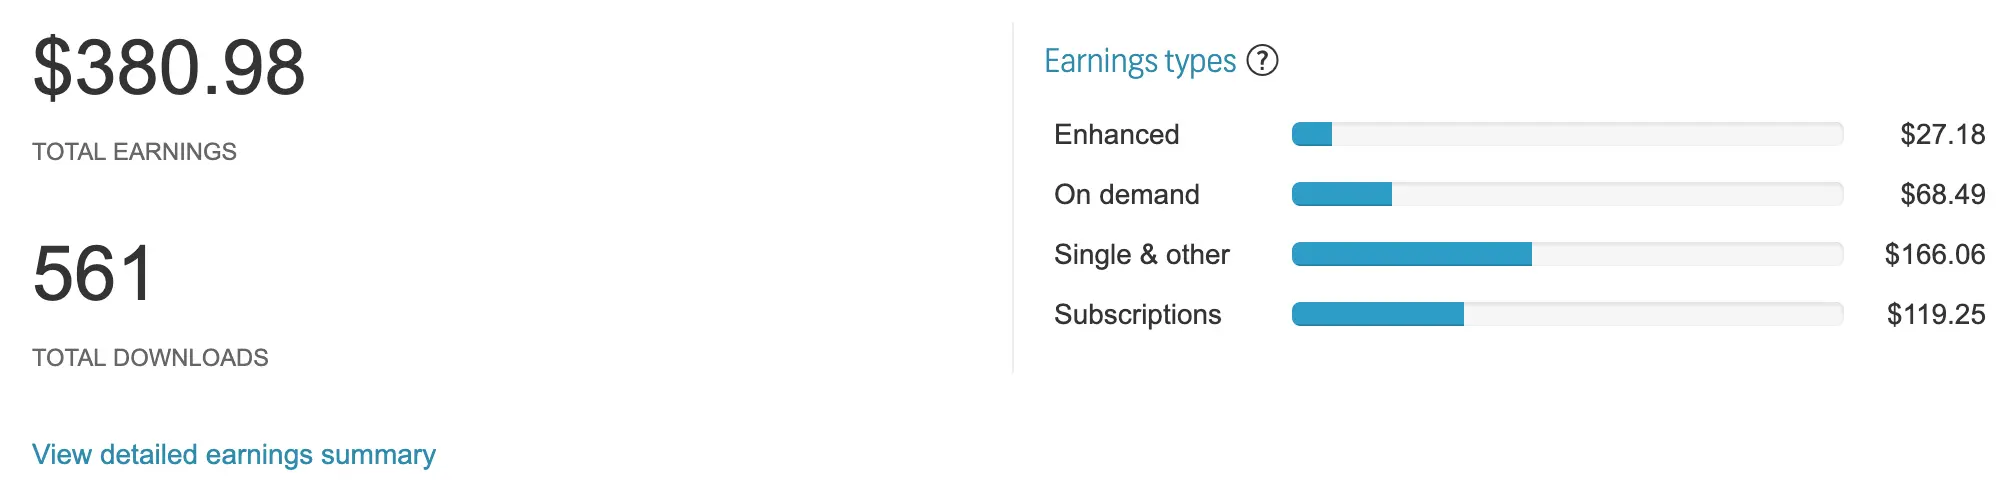 Shutterstock Earnings Summary